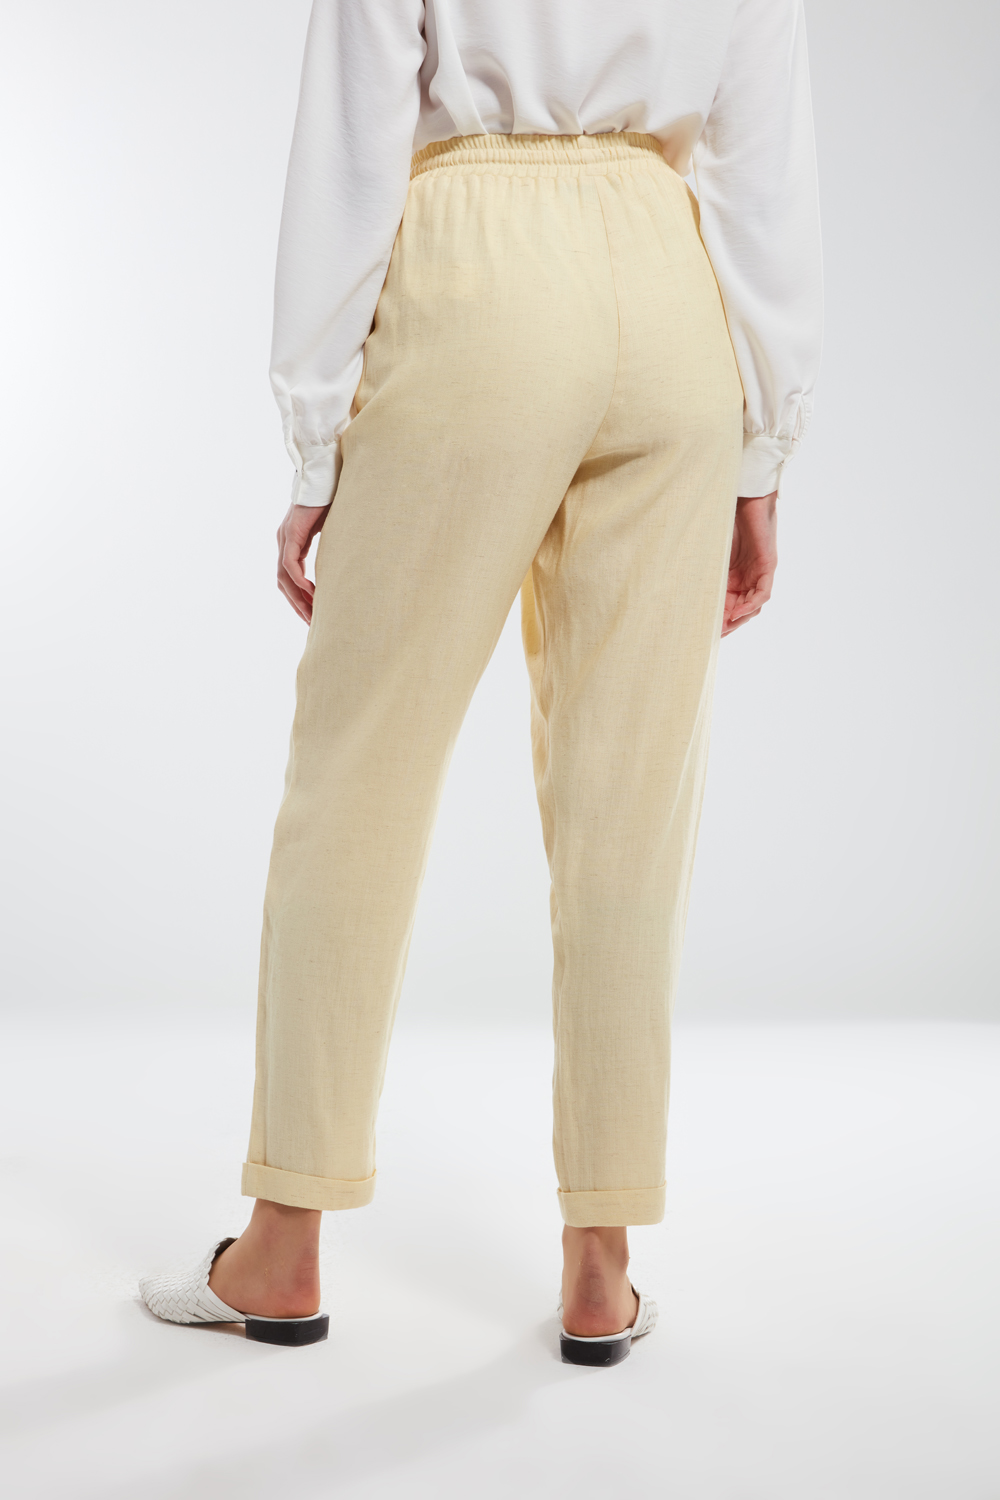 Linen Textured Yellow Carrot Cut Trousers